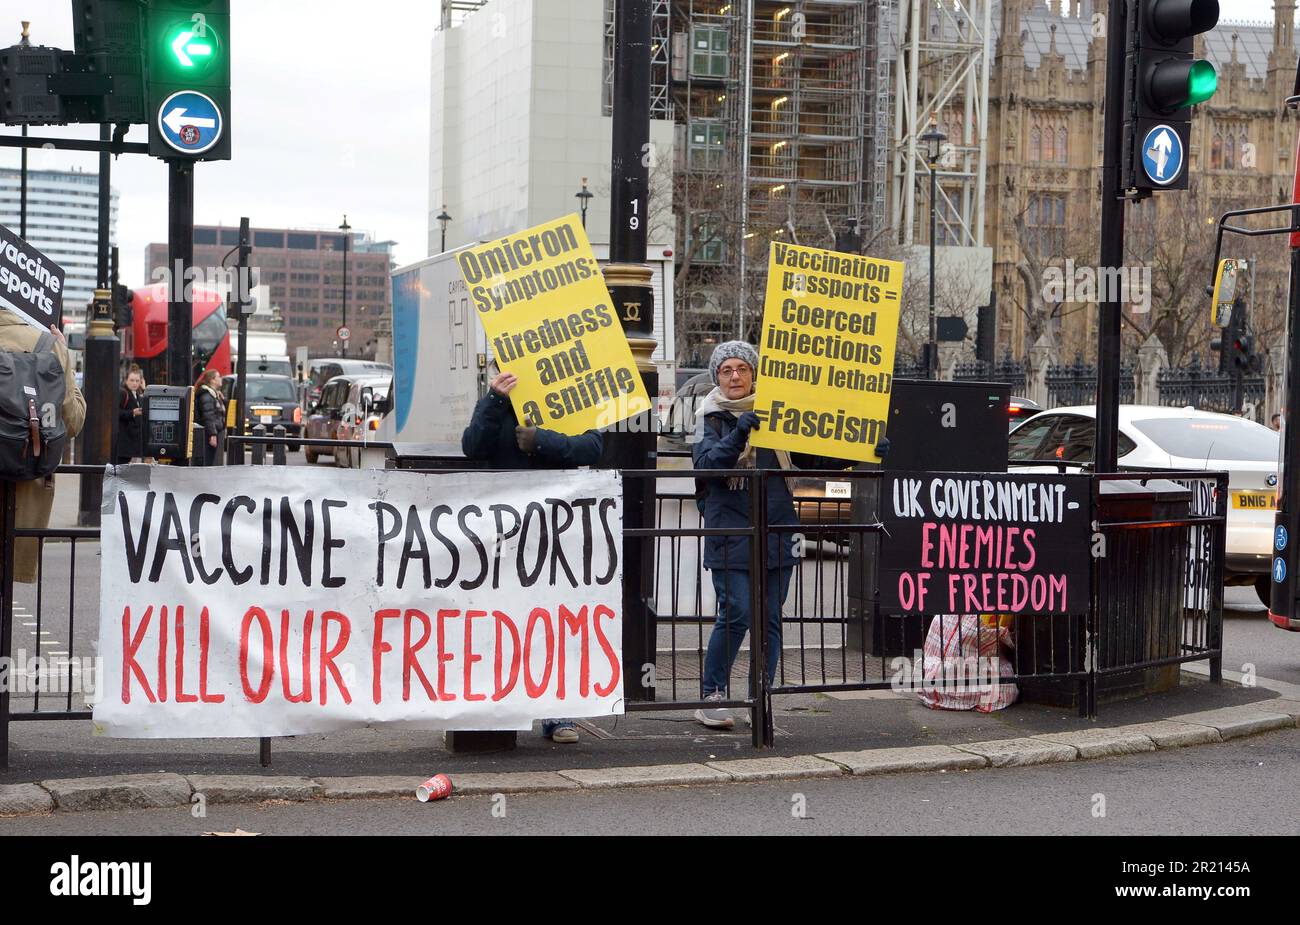 Anti-Vaxxers en dehors du Parlement britannique à Londres, dans le contexte de la pandémie du coronavirus COVID-19. Novembre 2021. Banque D'Images